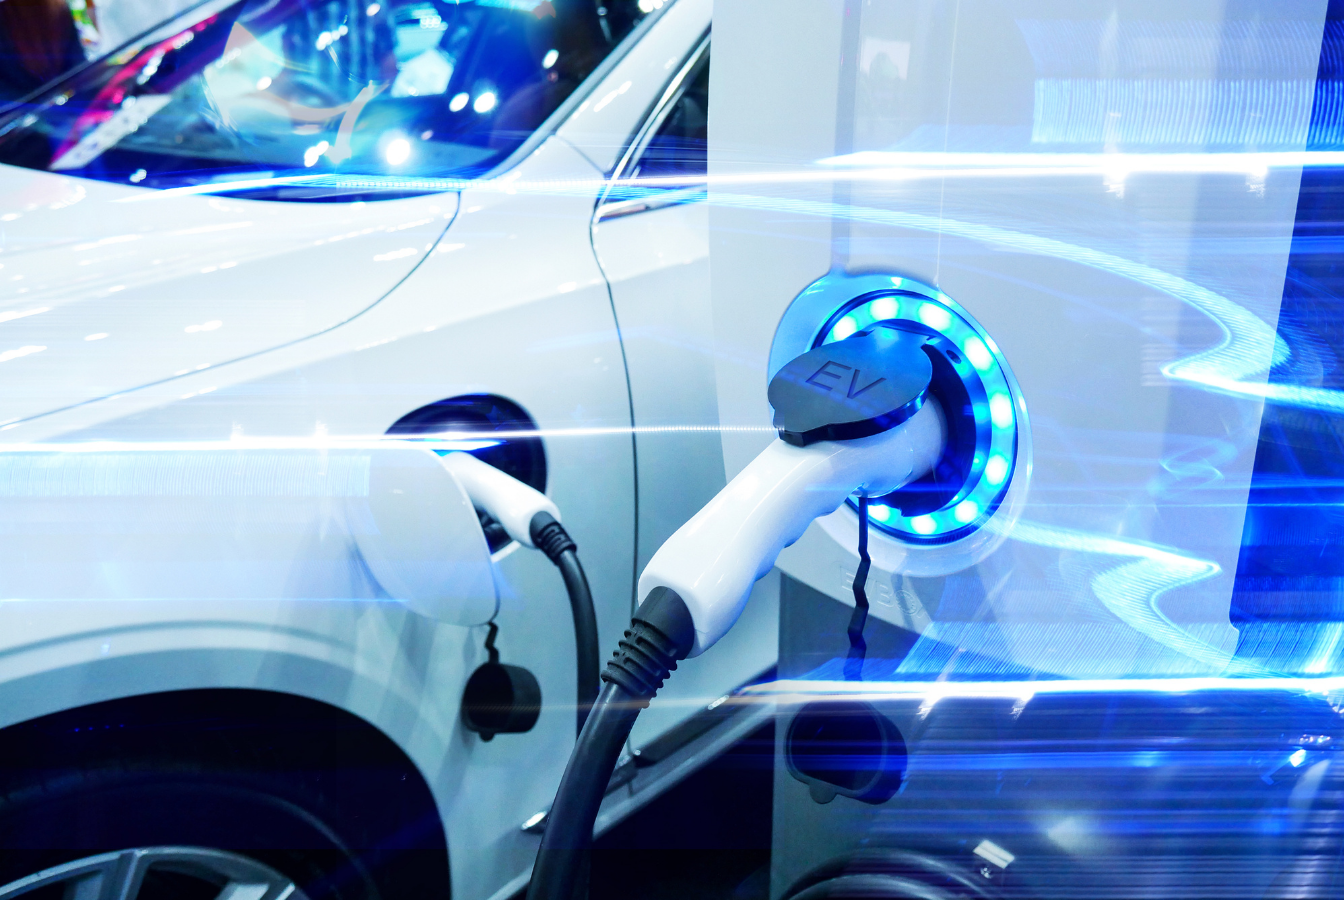 Samochody elektryczne będą tańsze w zakupie od spalinowych